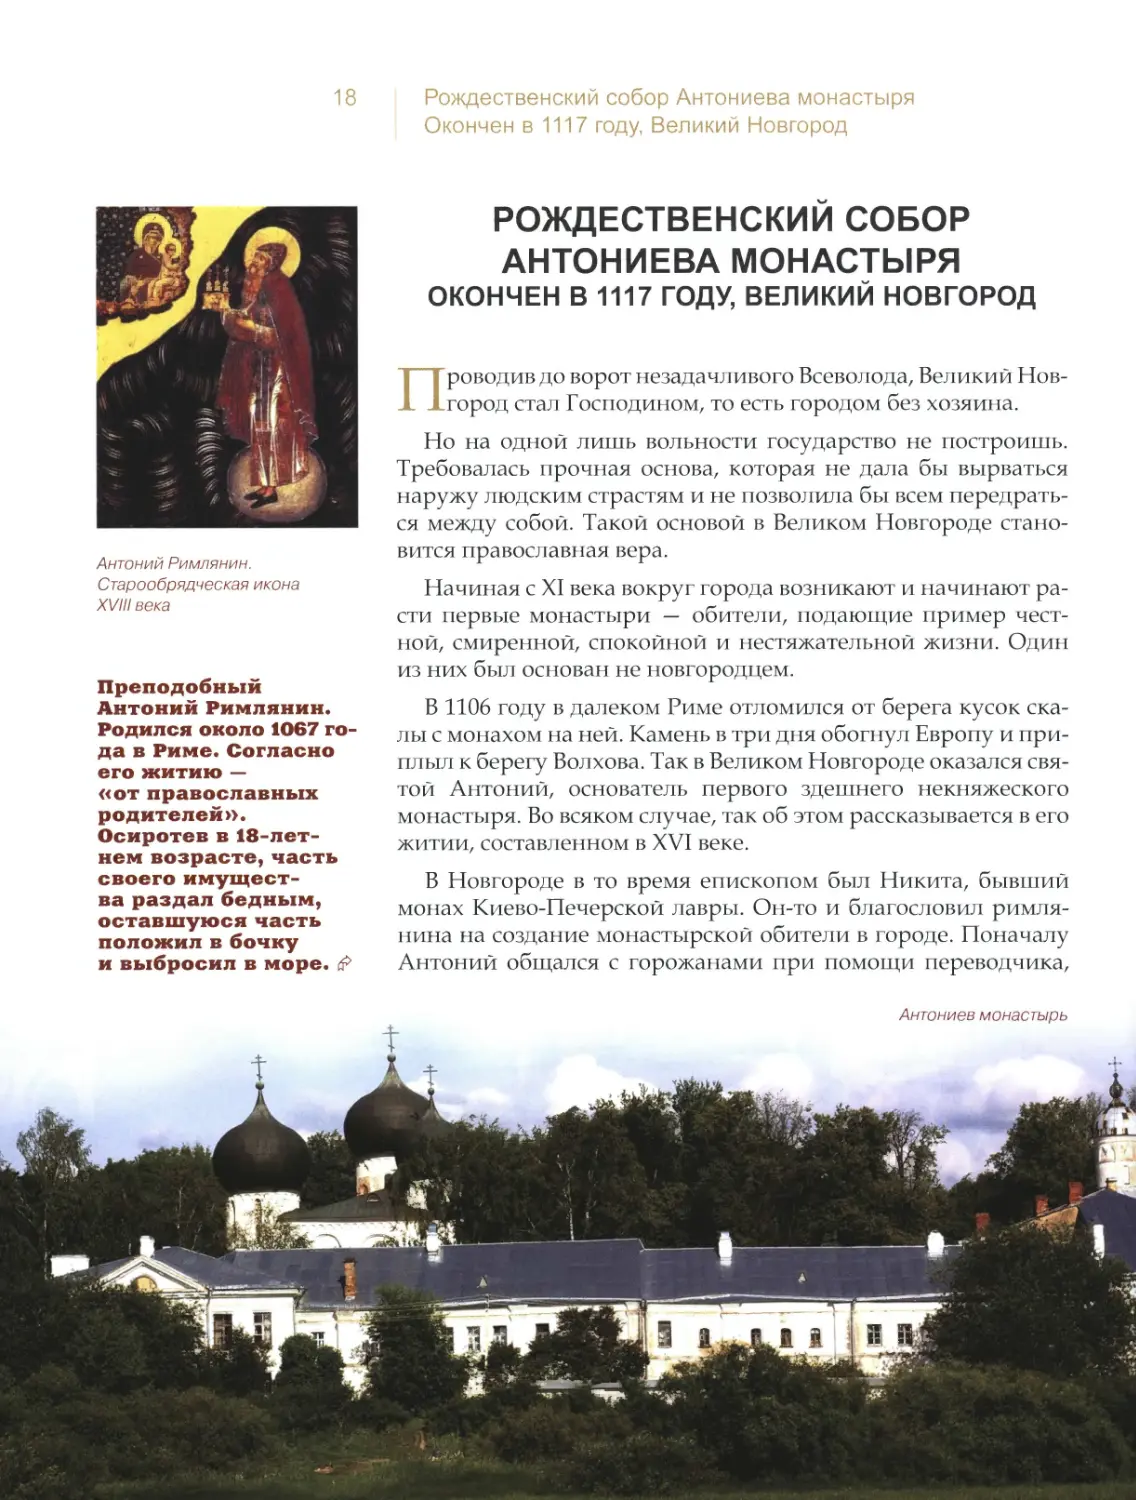 Рождественский собор Антониева монастыря, Великий Новгород